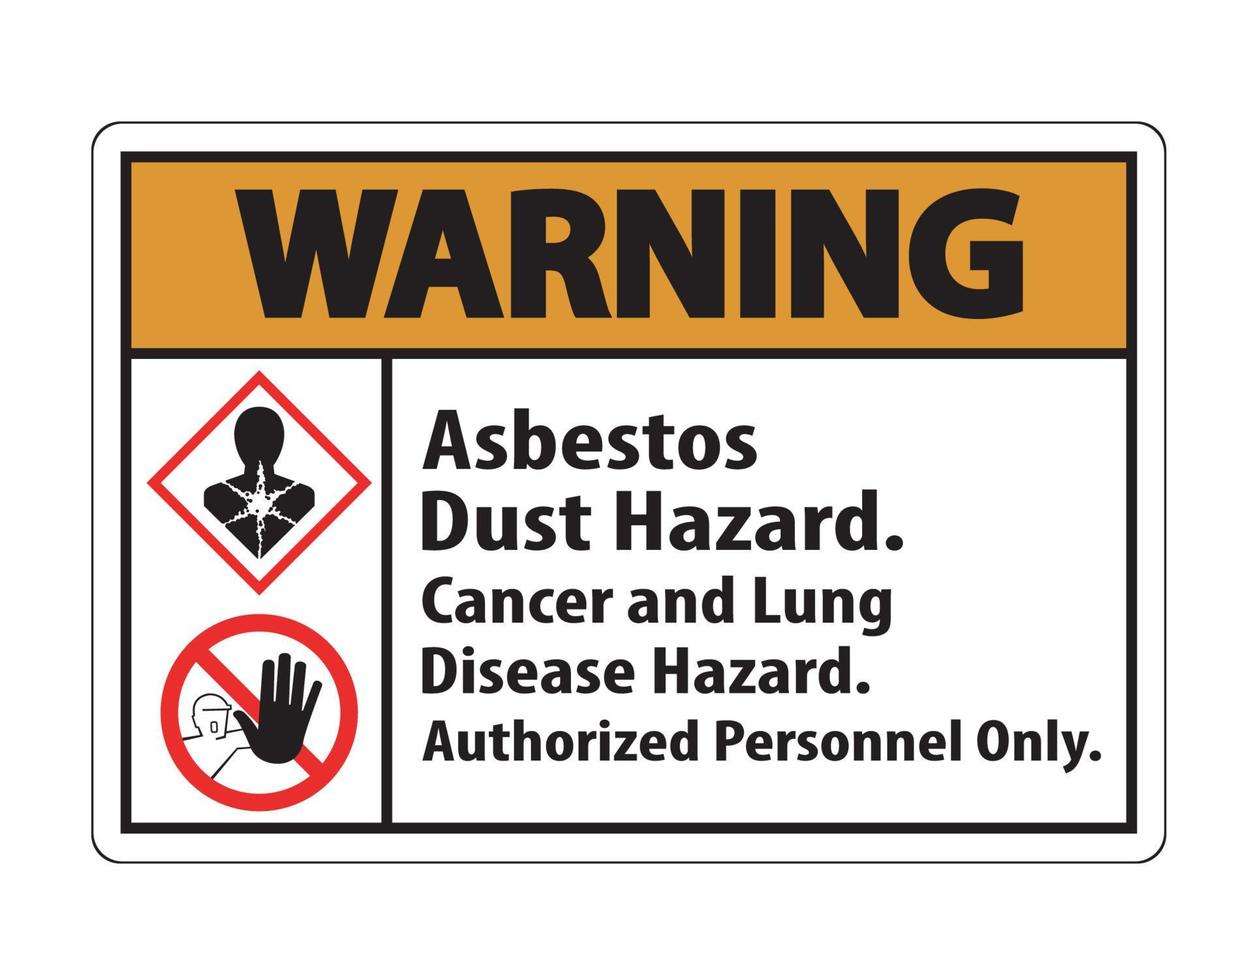 étiquette d'avertissement danger de maladie, personnel autorisé uniquement isoler sur fond transparent, illustration vectorielle vecteur